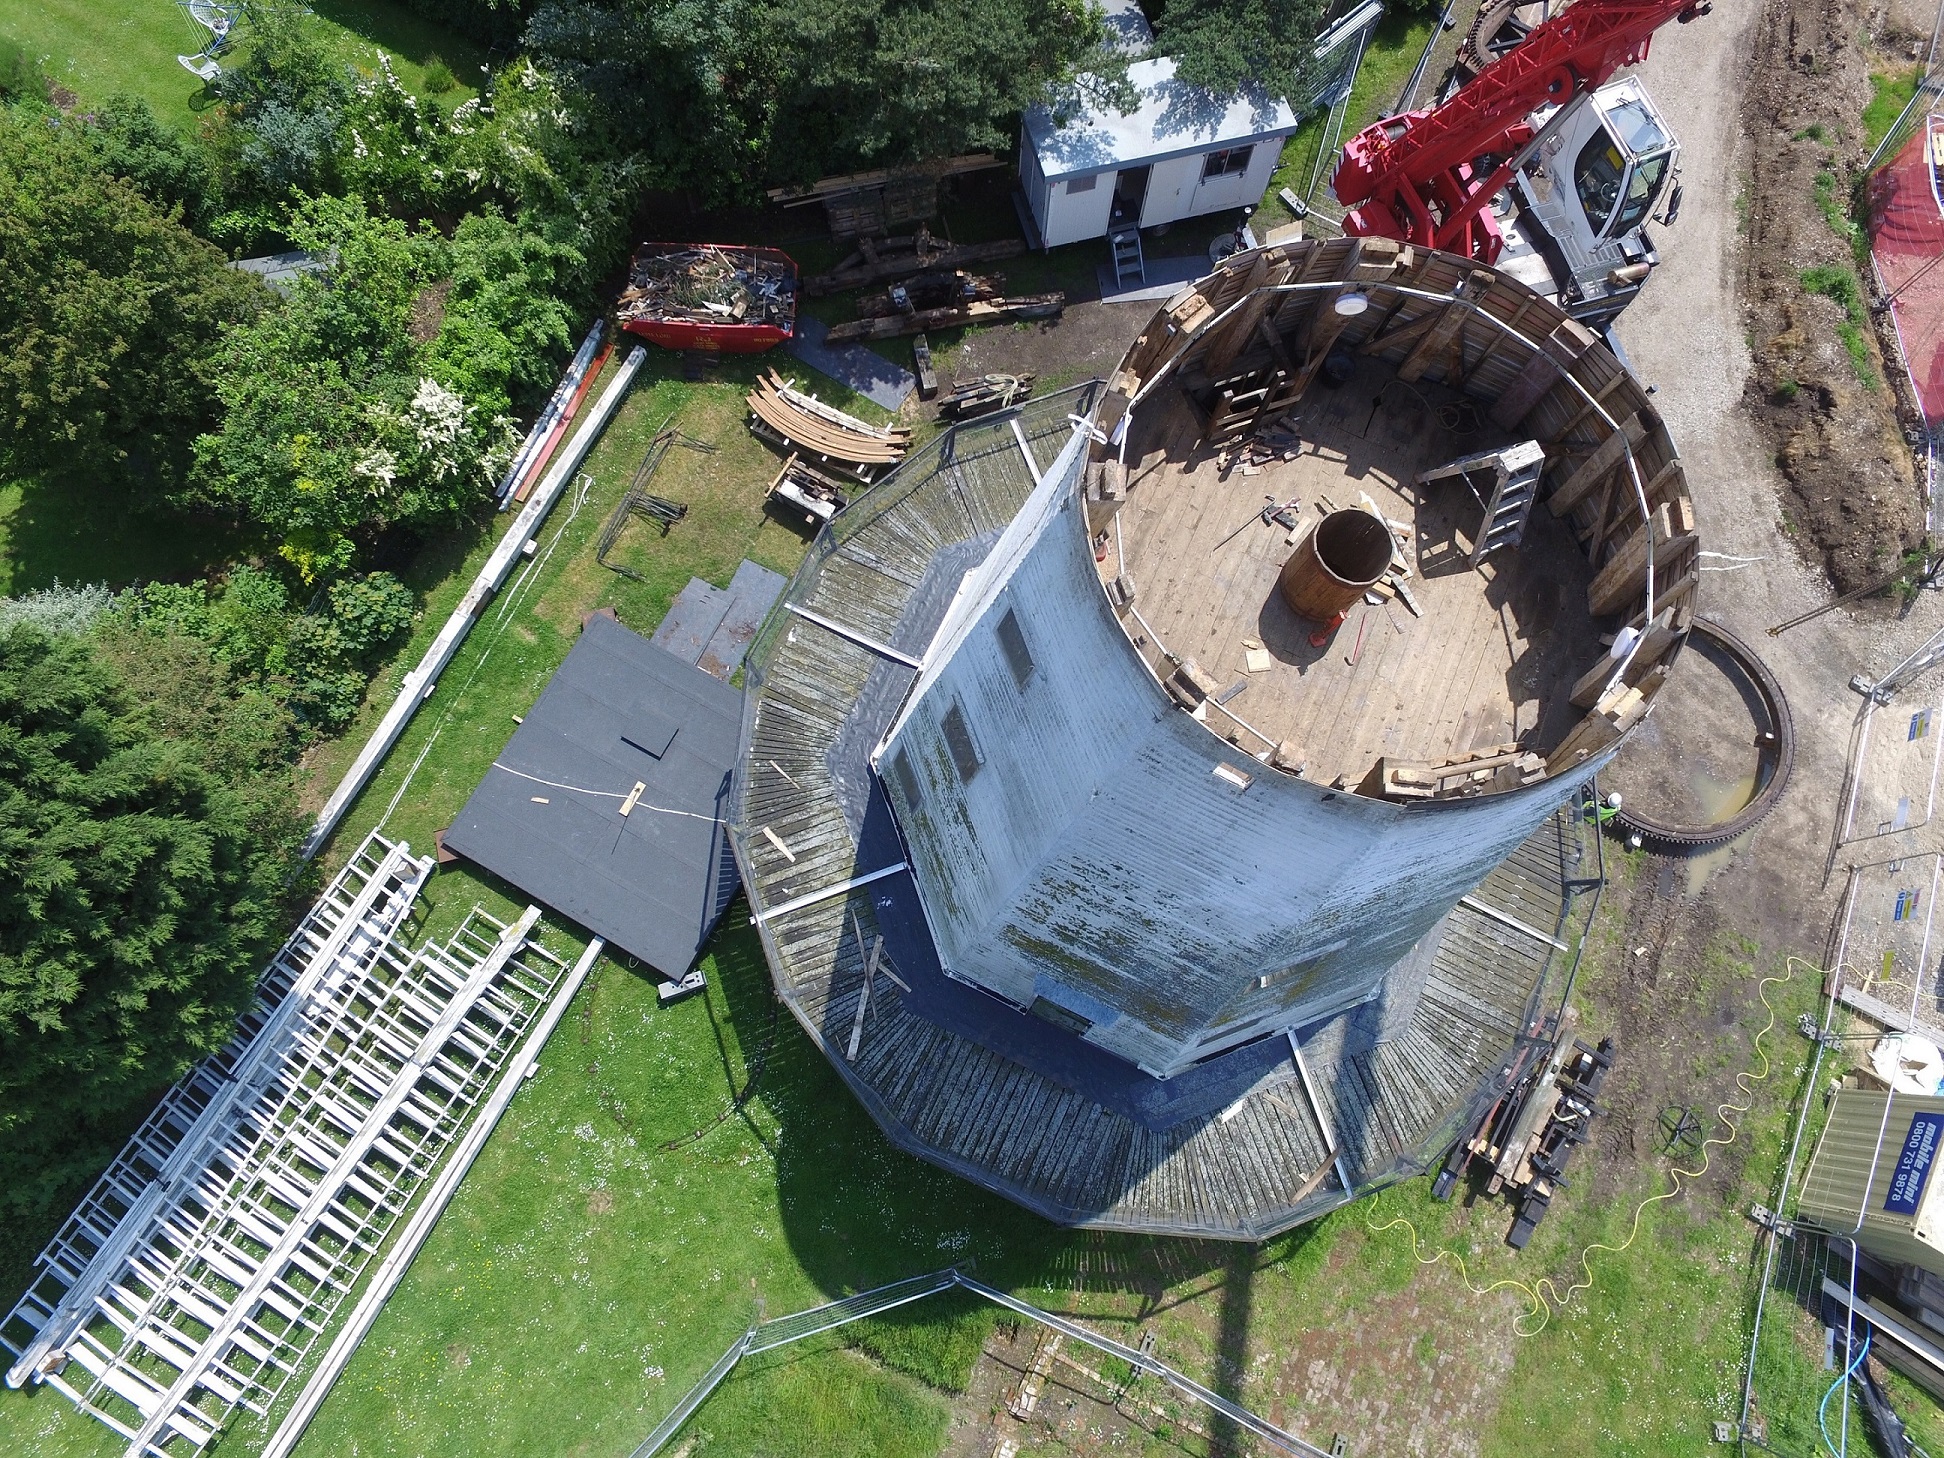 Upminster Windmill: Restoration of Upminster Windmill Heritage Site